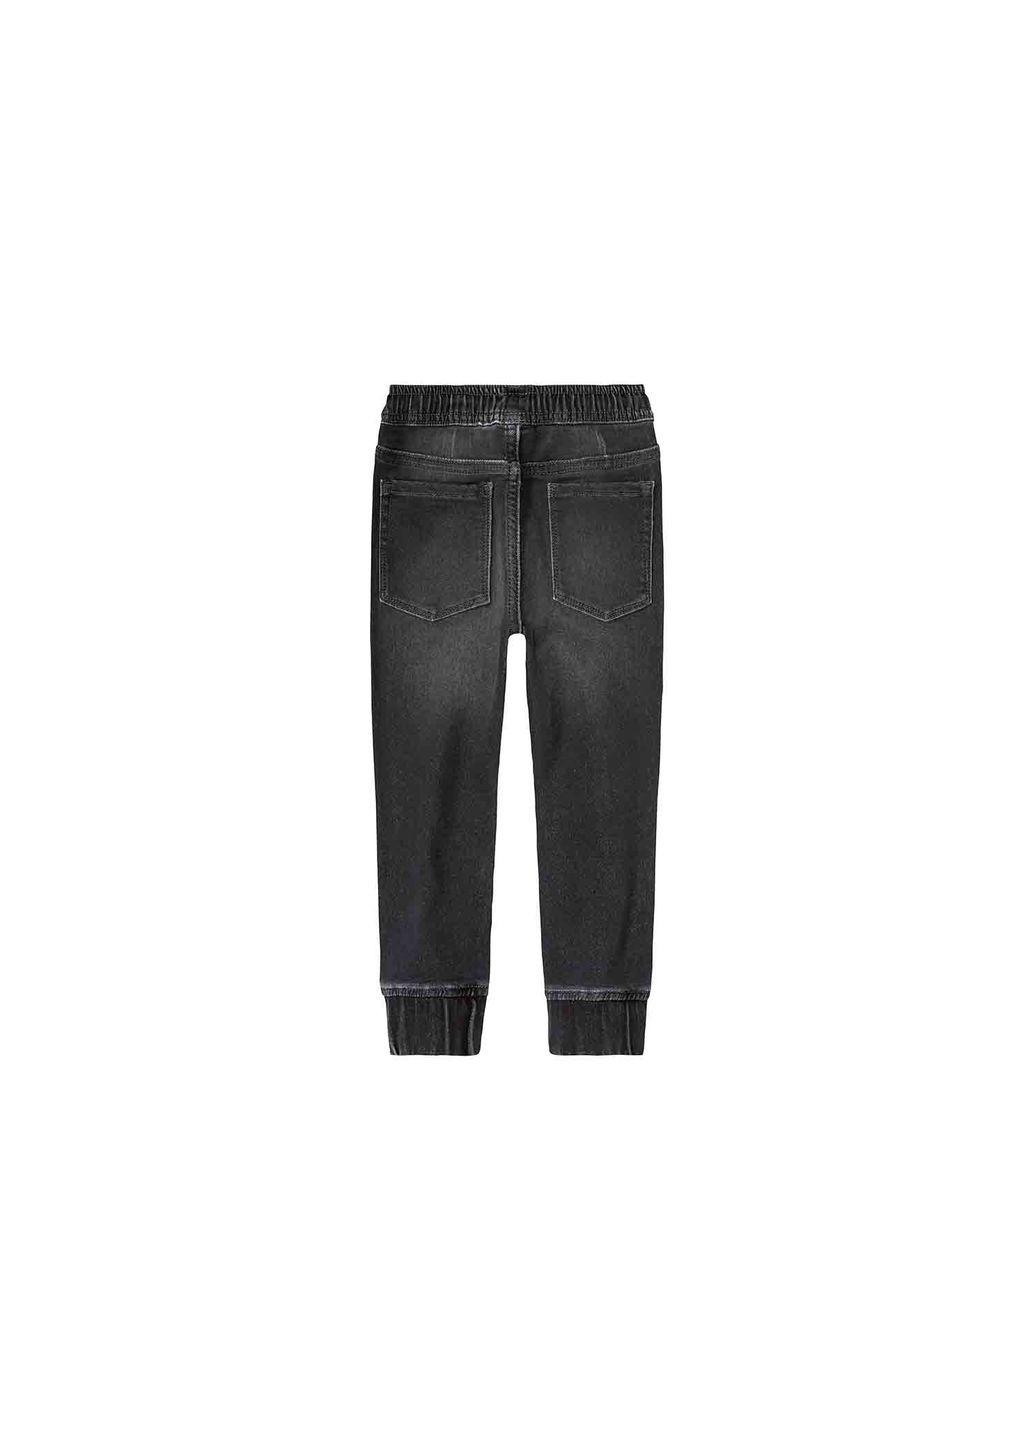 Черные демисезонные джинсы джоггеры стрейтчевые для мальчика 382075 Lupilu